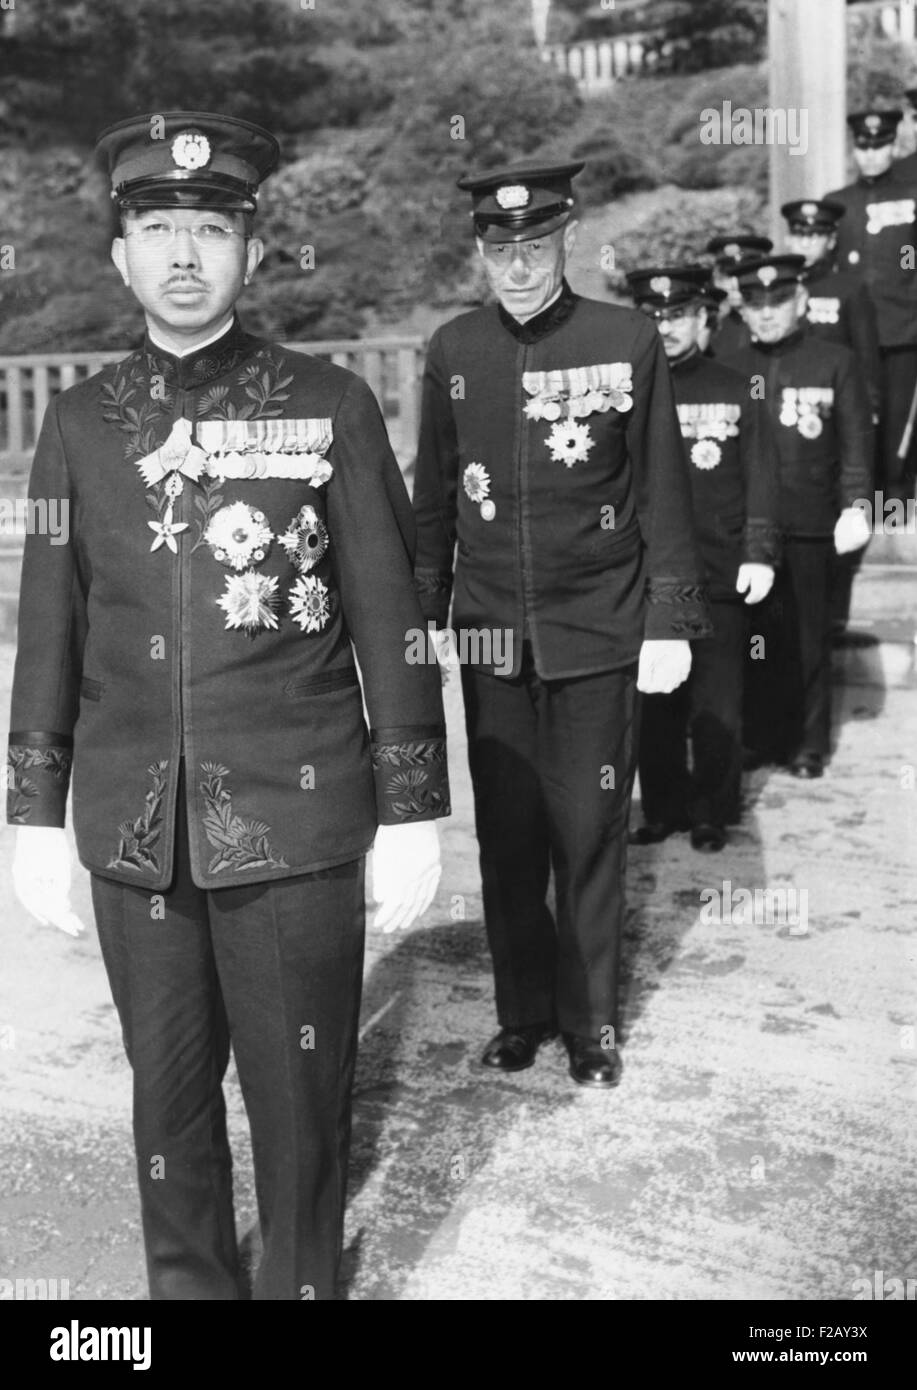 L'empereur Hirohito du Japon, 24 novembre 1945. Photographe de presse Acme, Tom Schaffer, a été autorisé à prendre la photo à une distance de 6 pieds, le plus proche n'importe quel photographe avait été admis à Sa Majesté à l'époque. CSU (2015  9 875) Banque D'Images